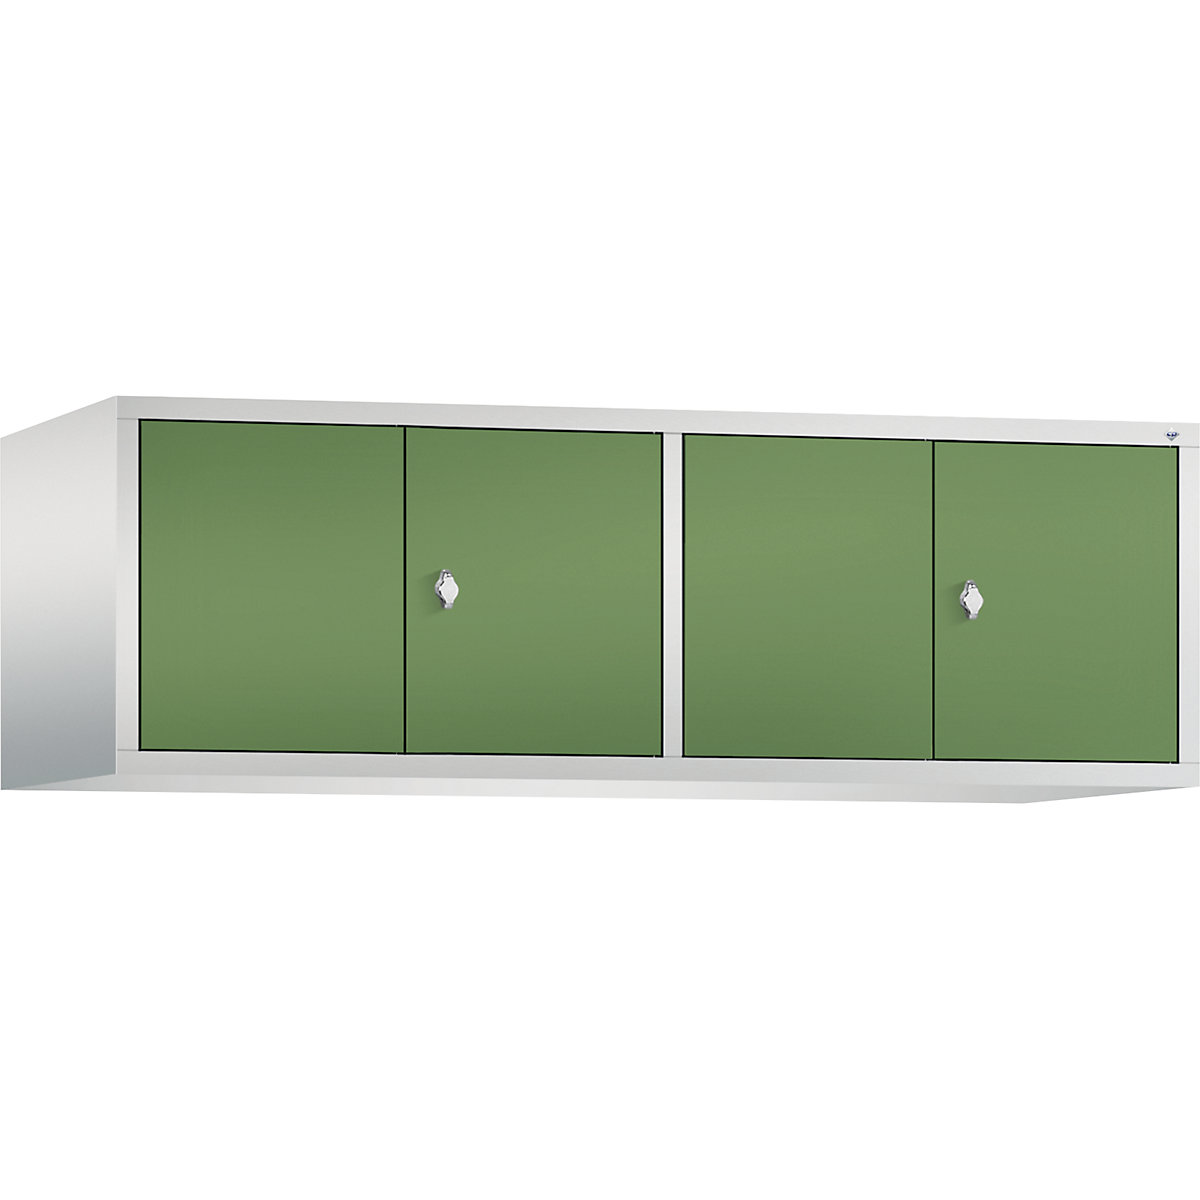 C+P – Altillo CLASSIC, puertas batientes que cierran al ras entre sí, 4 compartimentos, anchura de compartimento 400 mm, gris luminoso / verde reseda